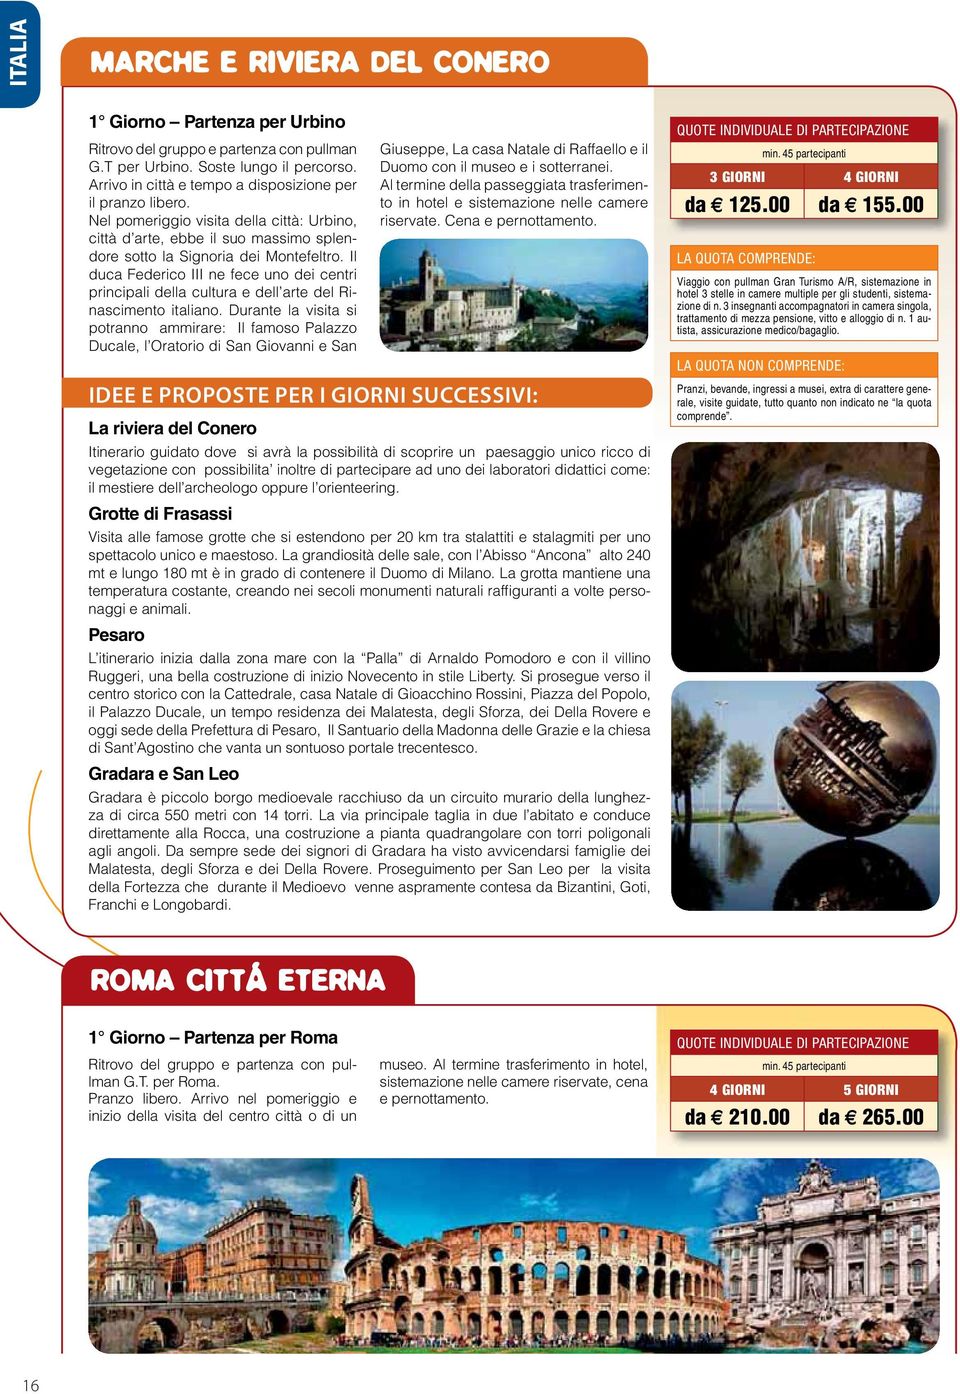 orienteering. Grotte di Frasassi naggi e animali. Pesaro Gradara e San Leo - 3 GIORNI 4 GIORNI da 125.00 da 155.